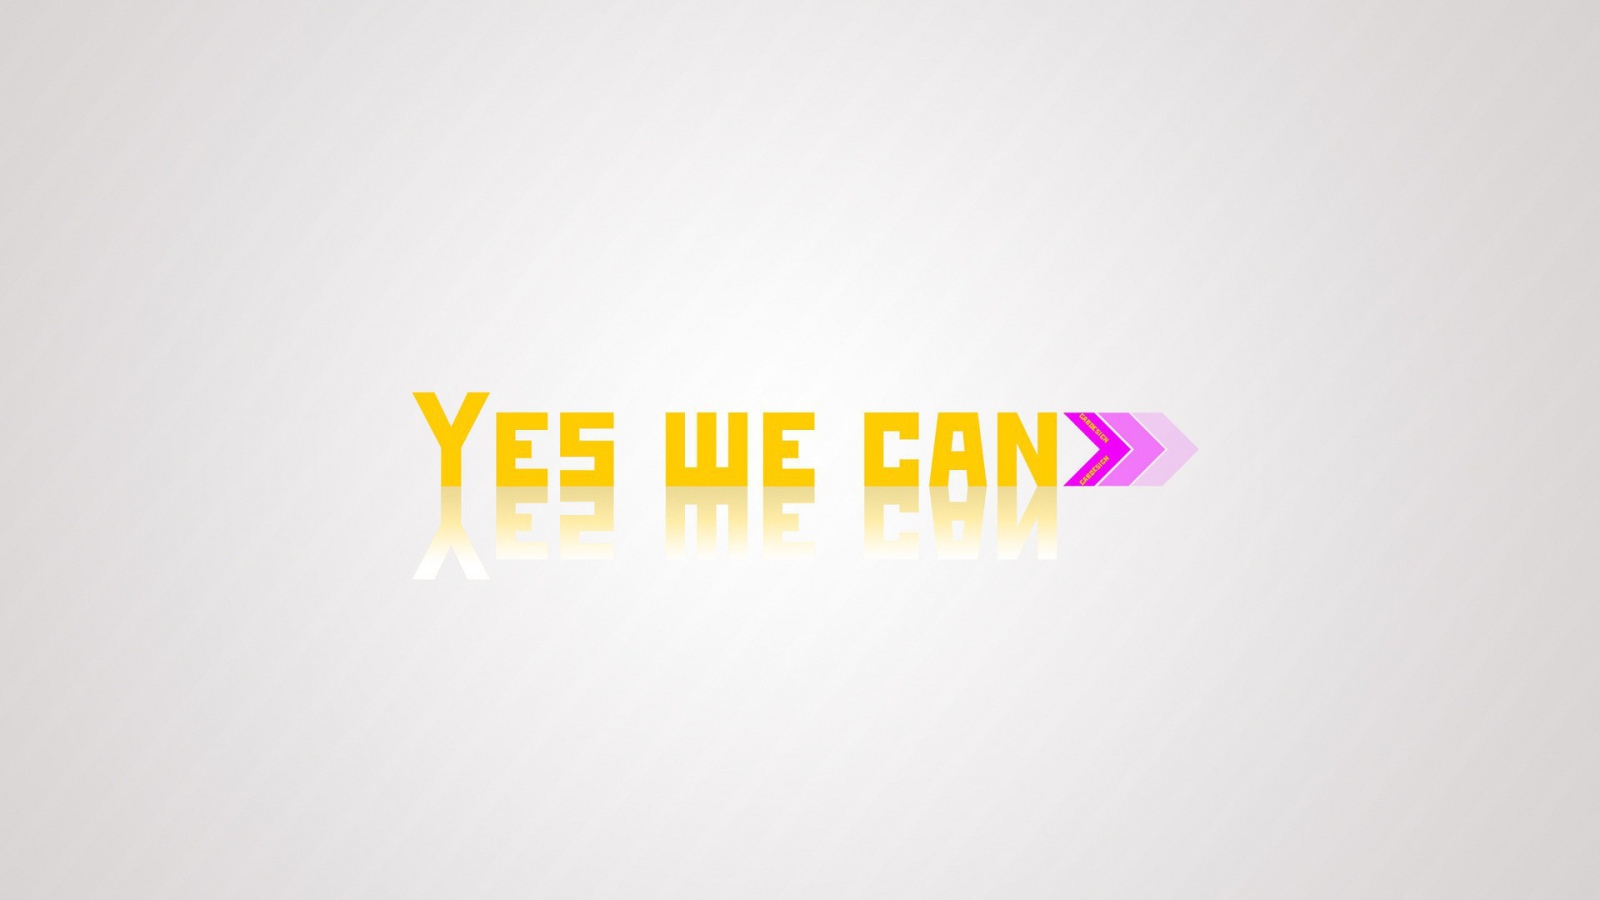 Да, мы можем